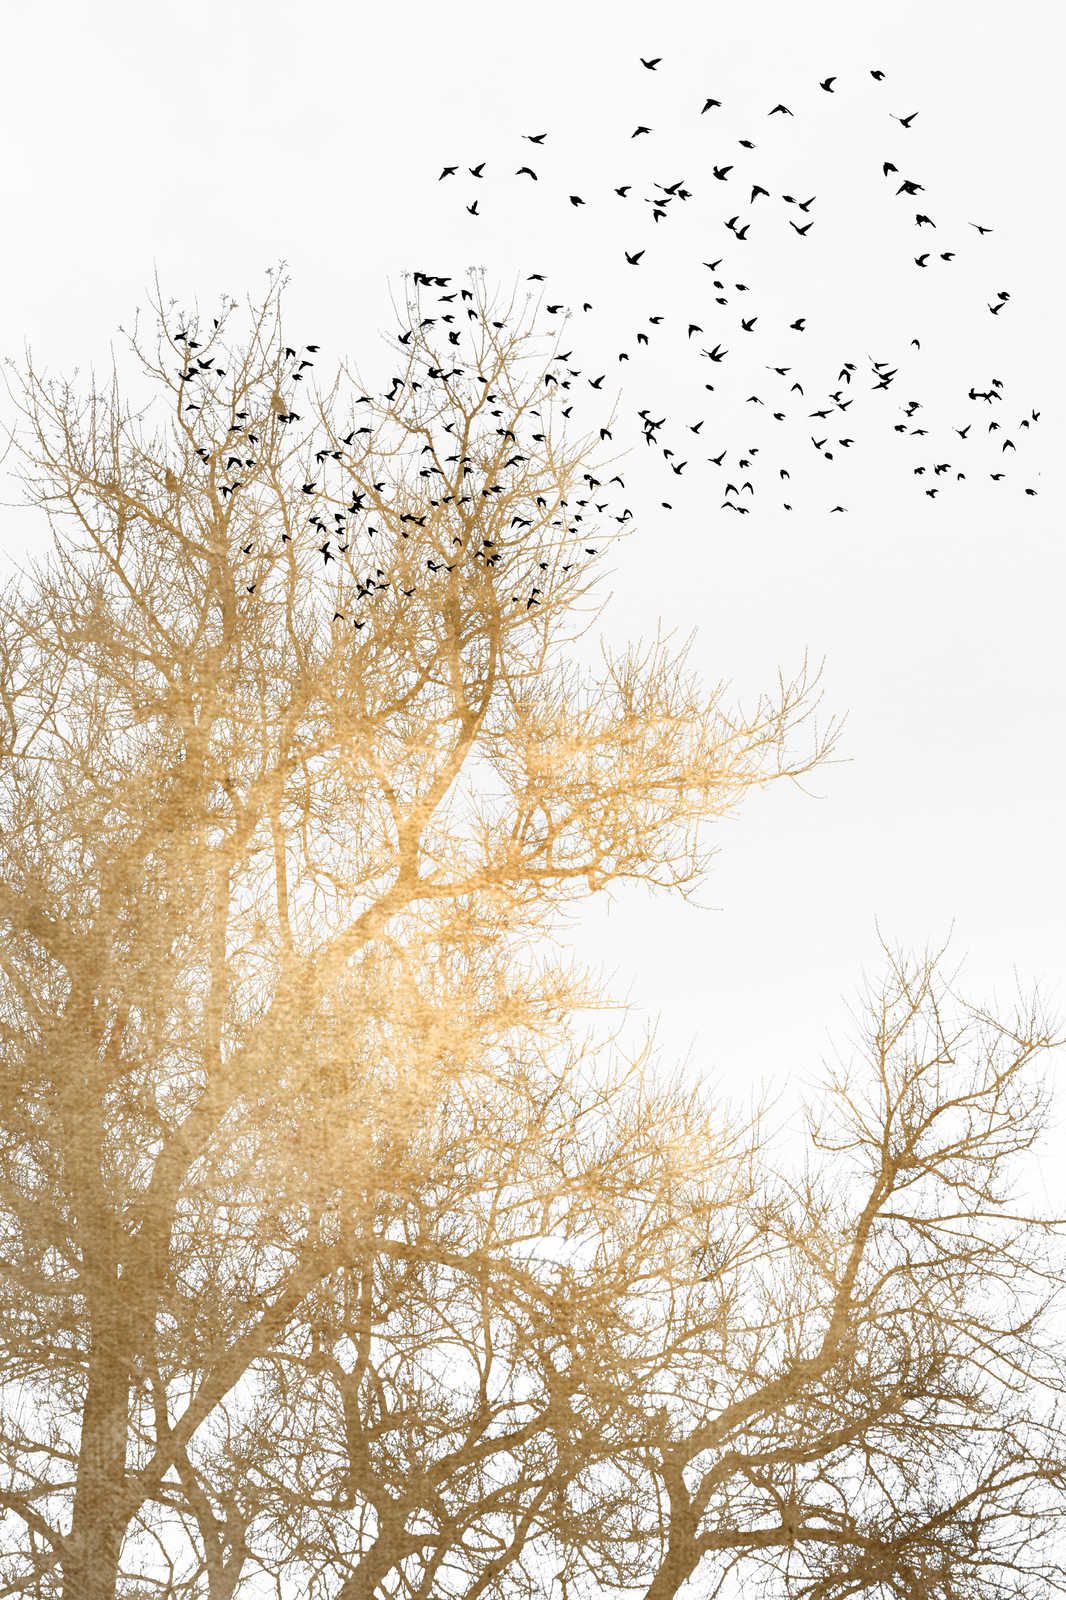             Cuadro en lienzo con árboles dorados y bandada de pájaros - 0,90 m x 0,60 m
        